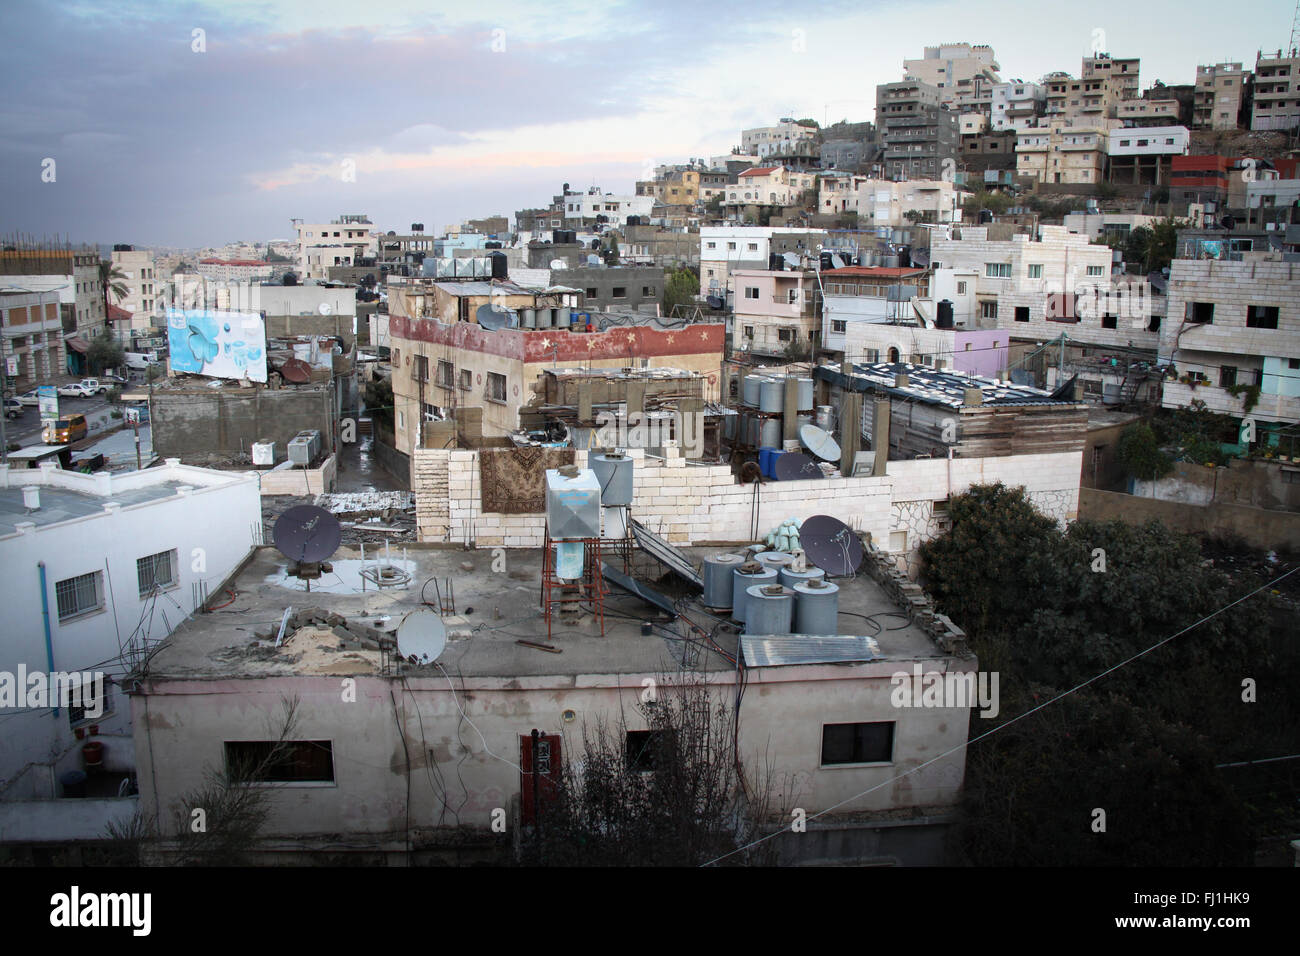 Blick auf dheisheh Flüchtlingslager - Betlehem - Palästina Stockfoto